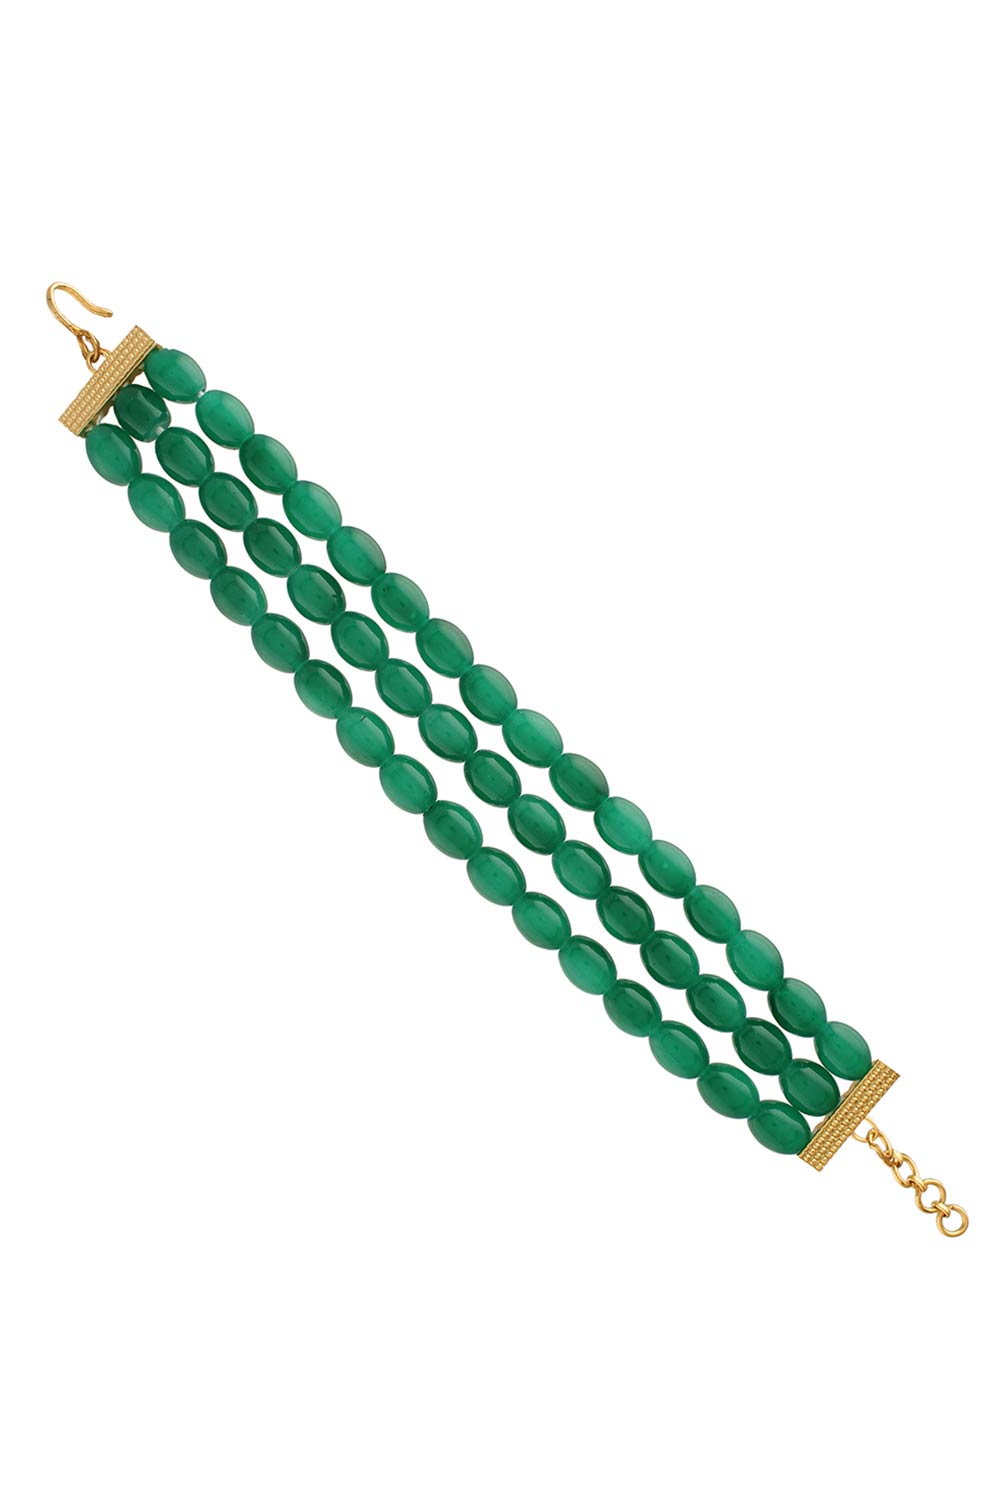 Buy Women's Alloy Bracelets in Green - Back